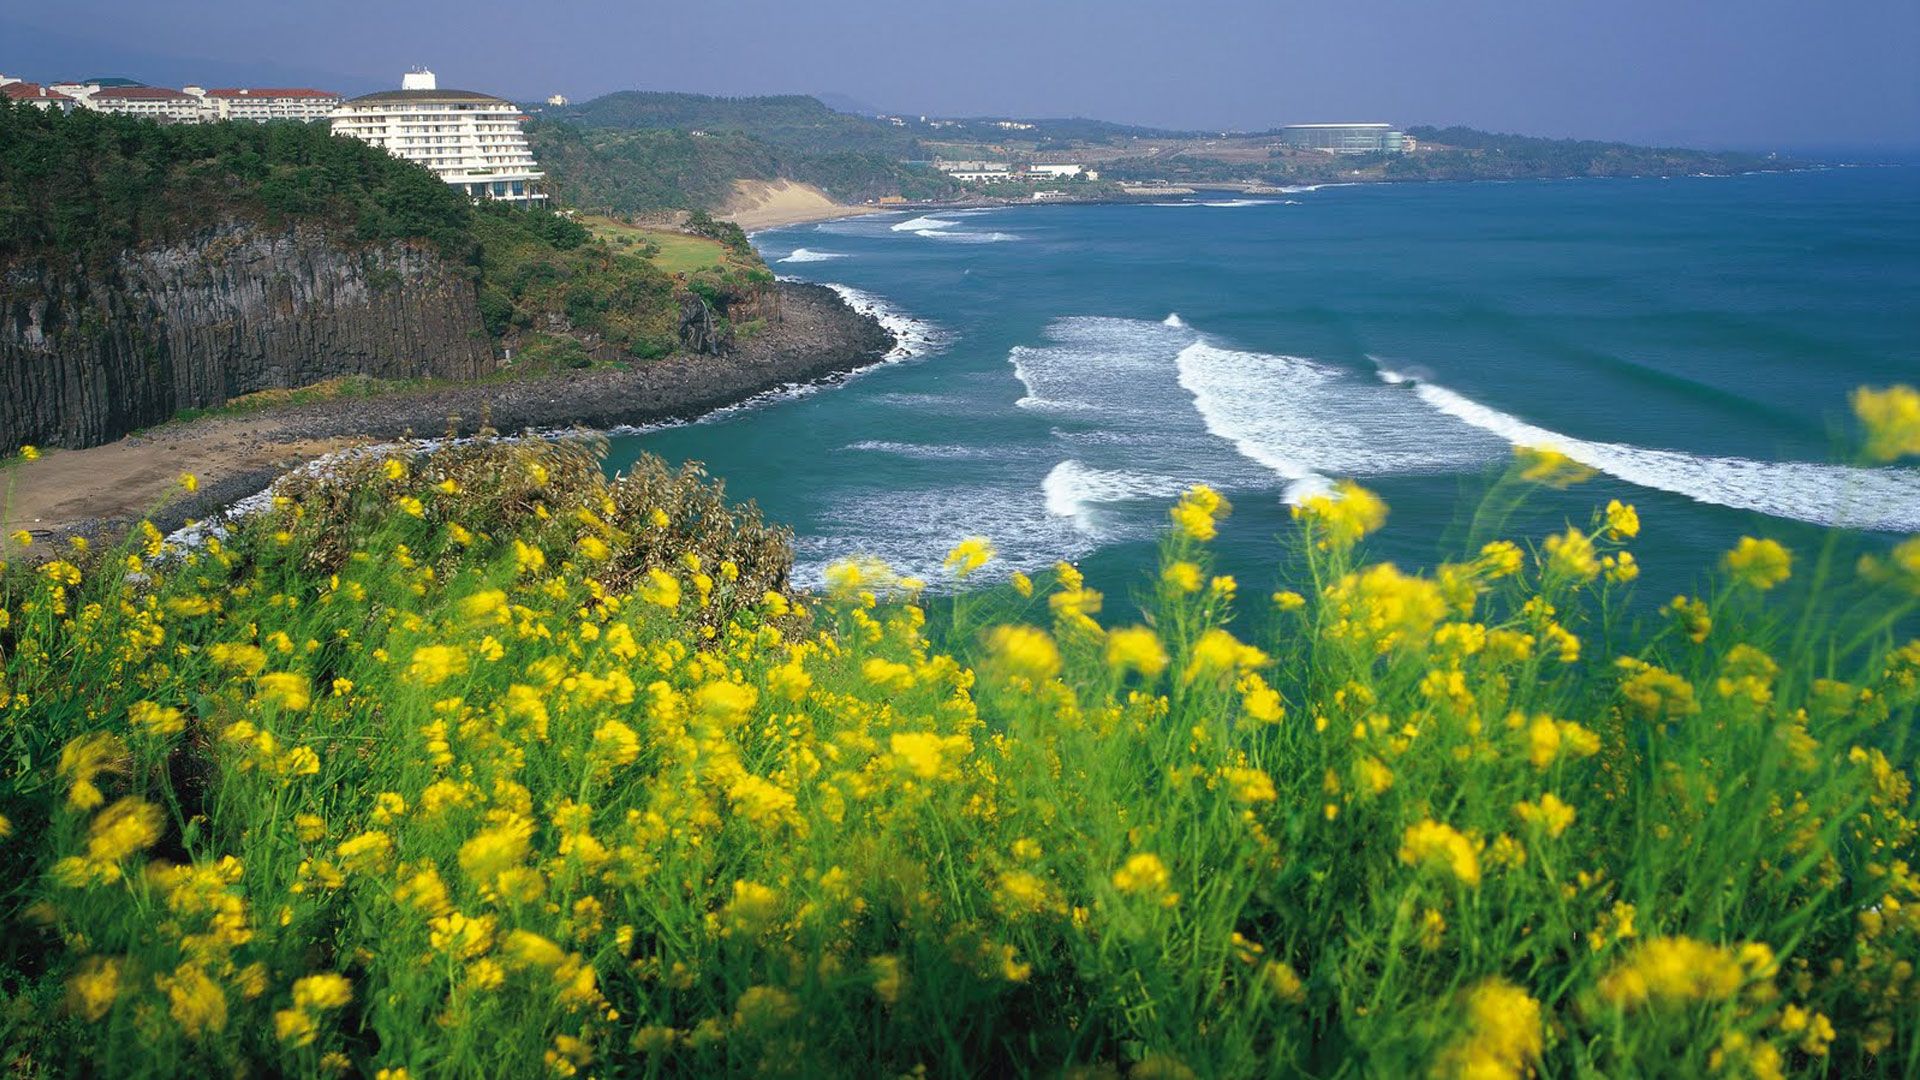 Activities to get the True Essence of Jeju Islands